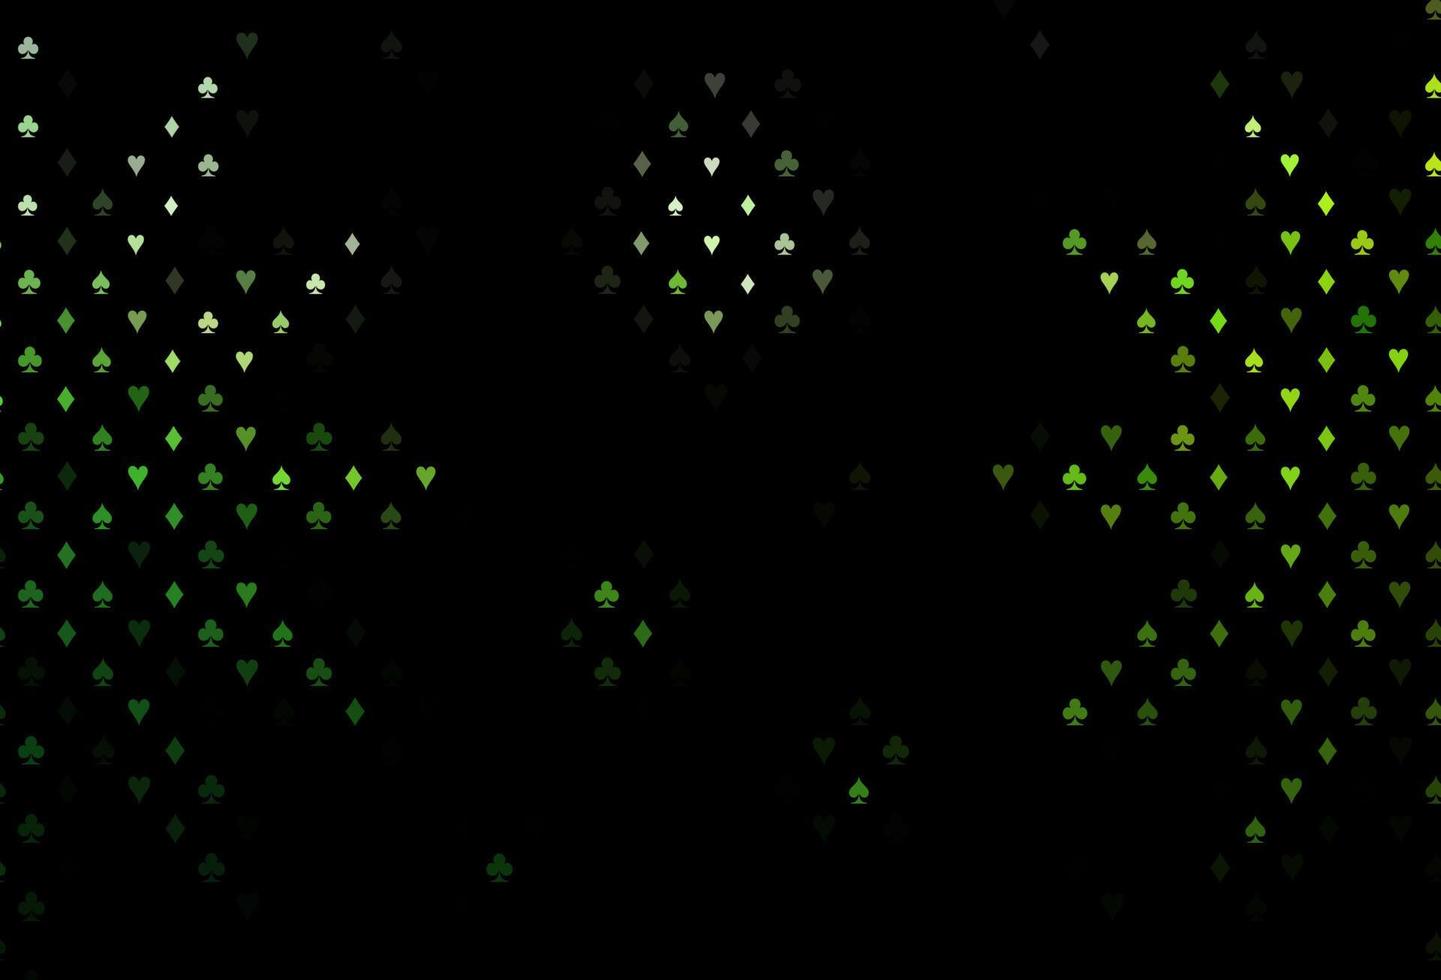 modello vettoriale verde scuro con il simbolo delle carte.